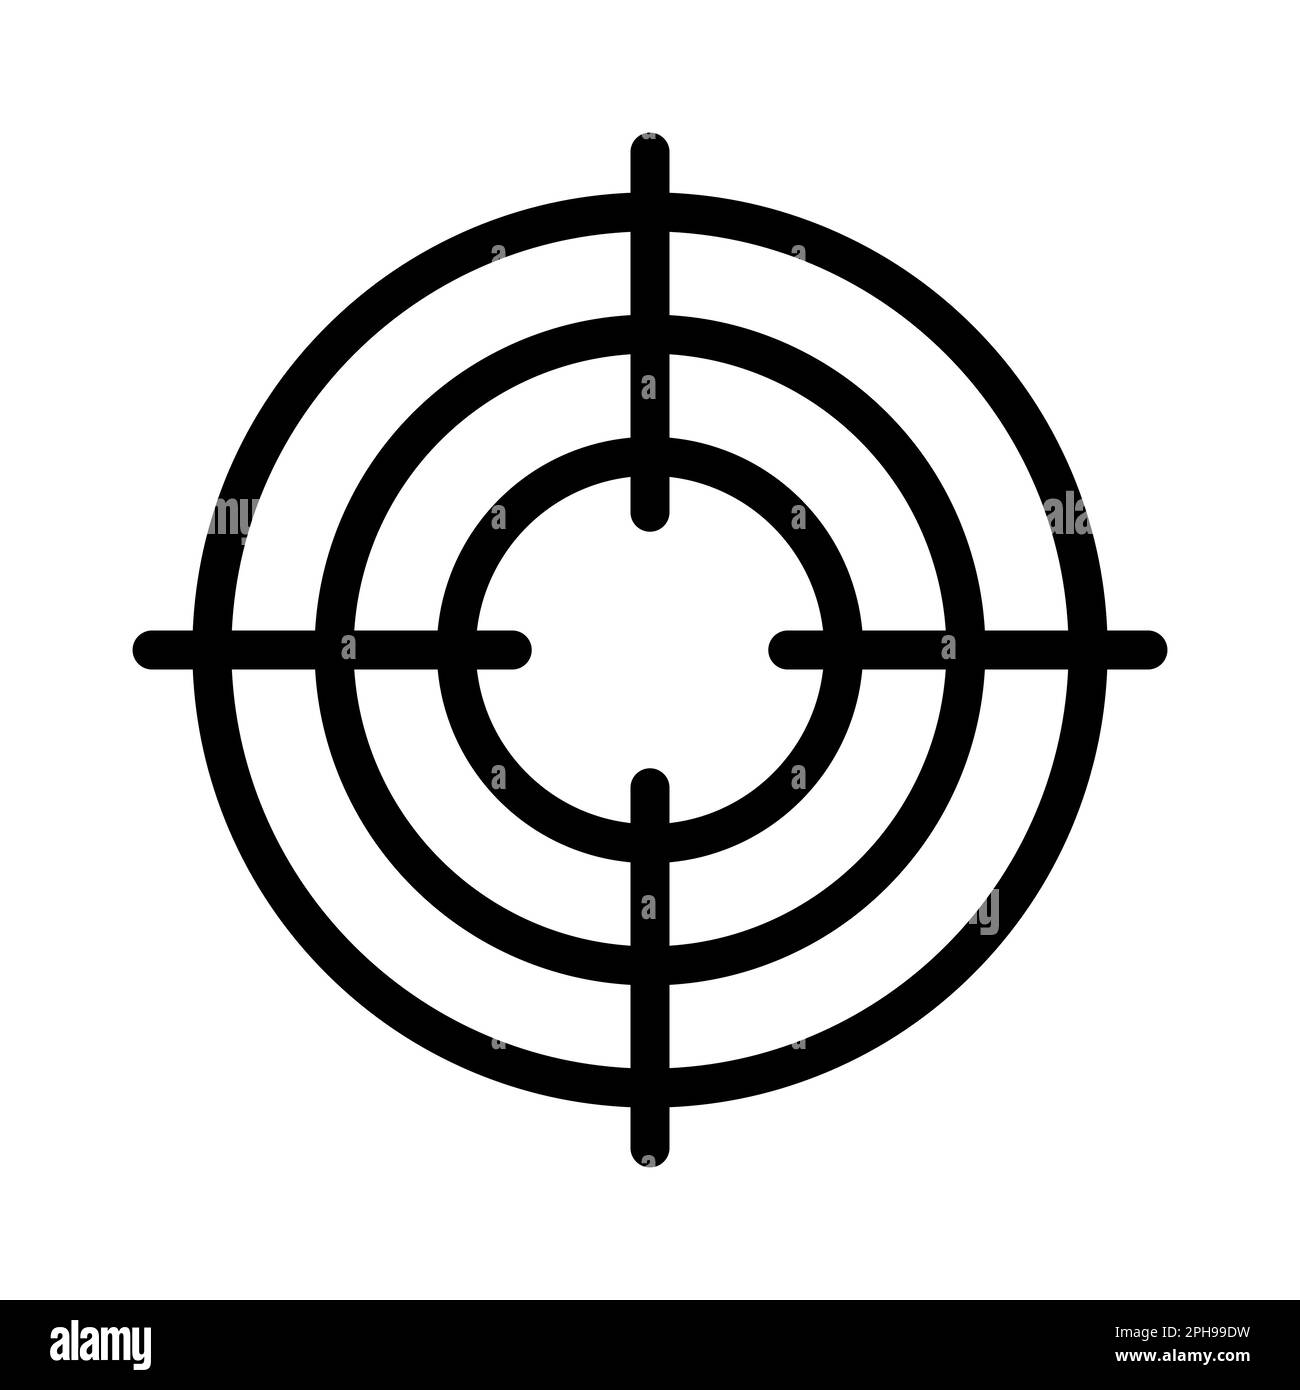 Focus icon performance, target arrow concept center focus sight gun Stock Vector